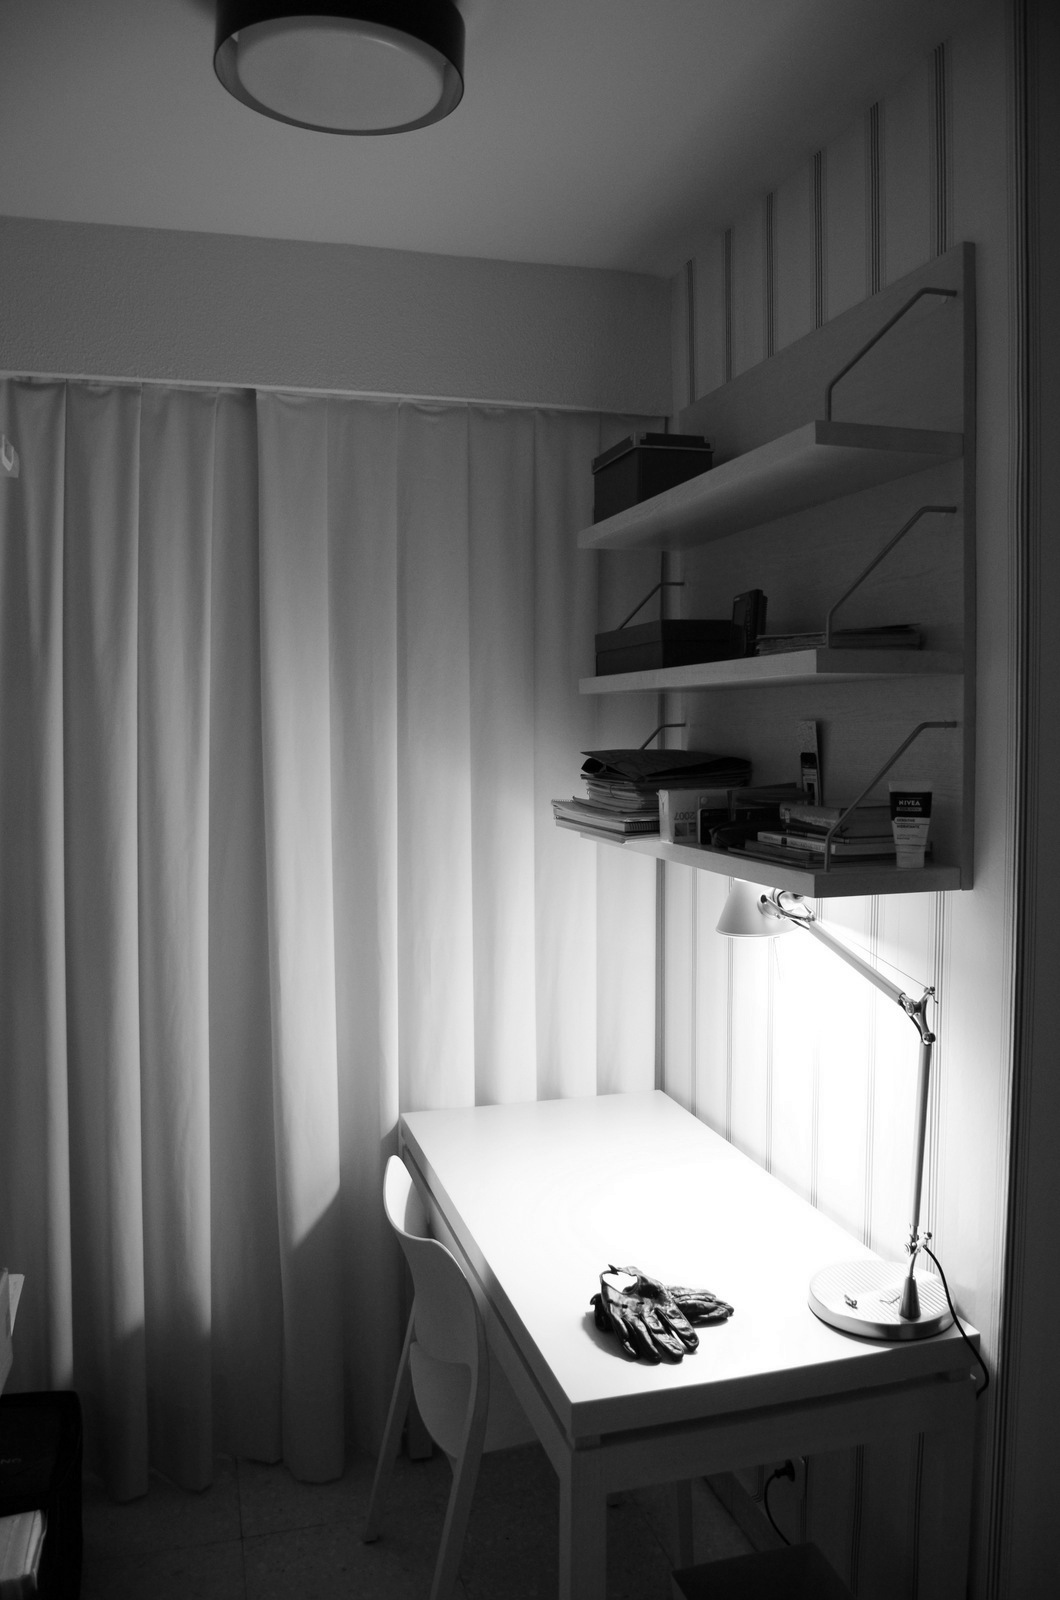 En un pequeño espacio como un dormitorio también se pueden crear cálidos ambientes de estudio.
(mesa N.E.M. silla laclásica, estantería a medida diseño X. Carande.)